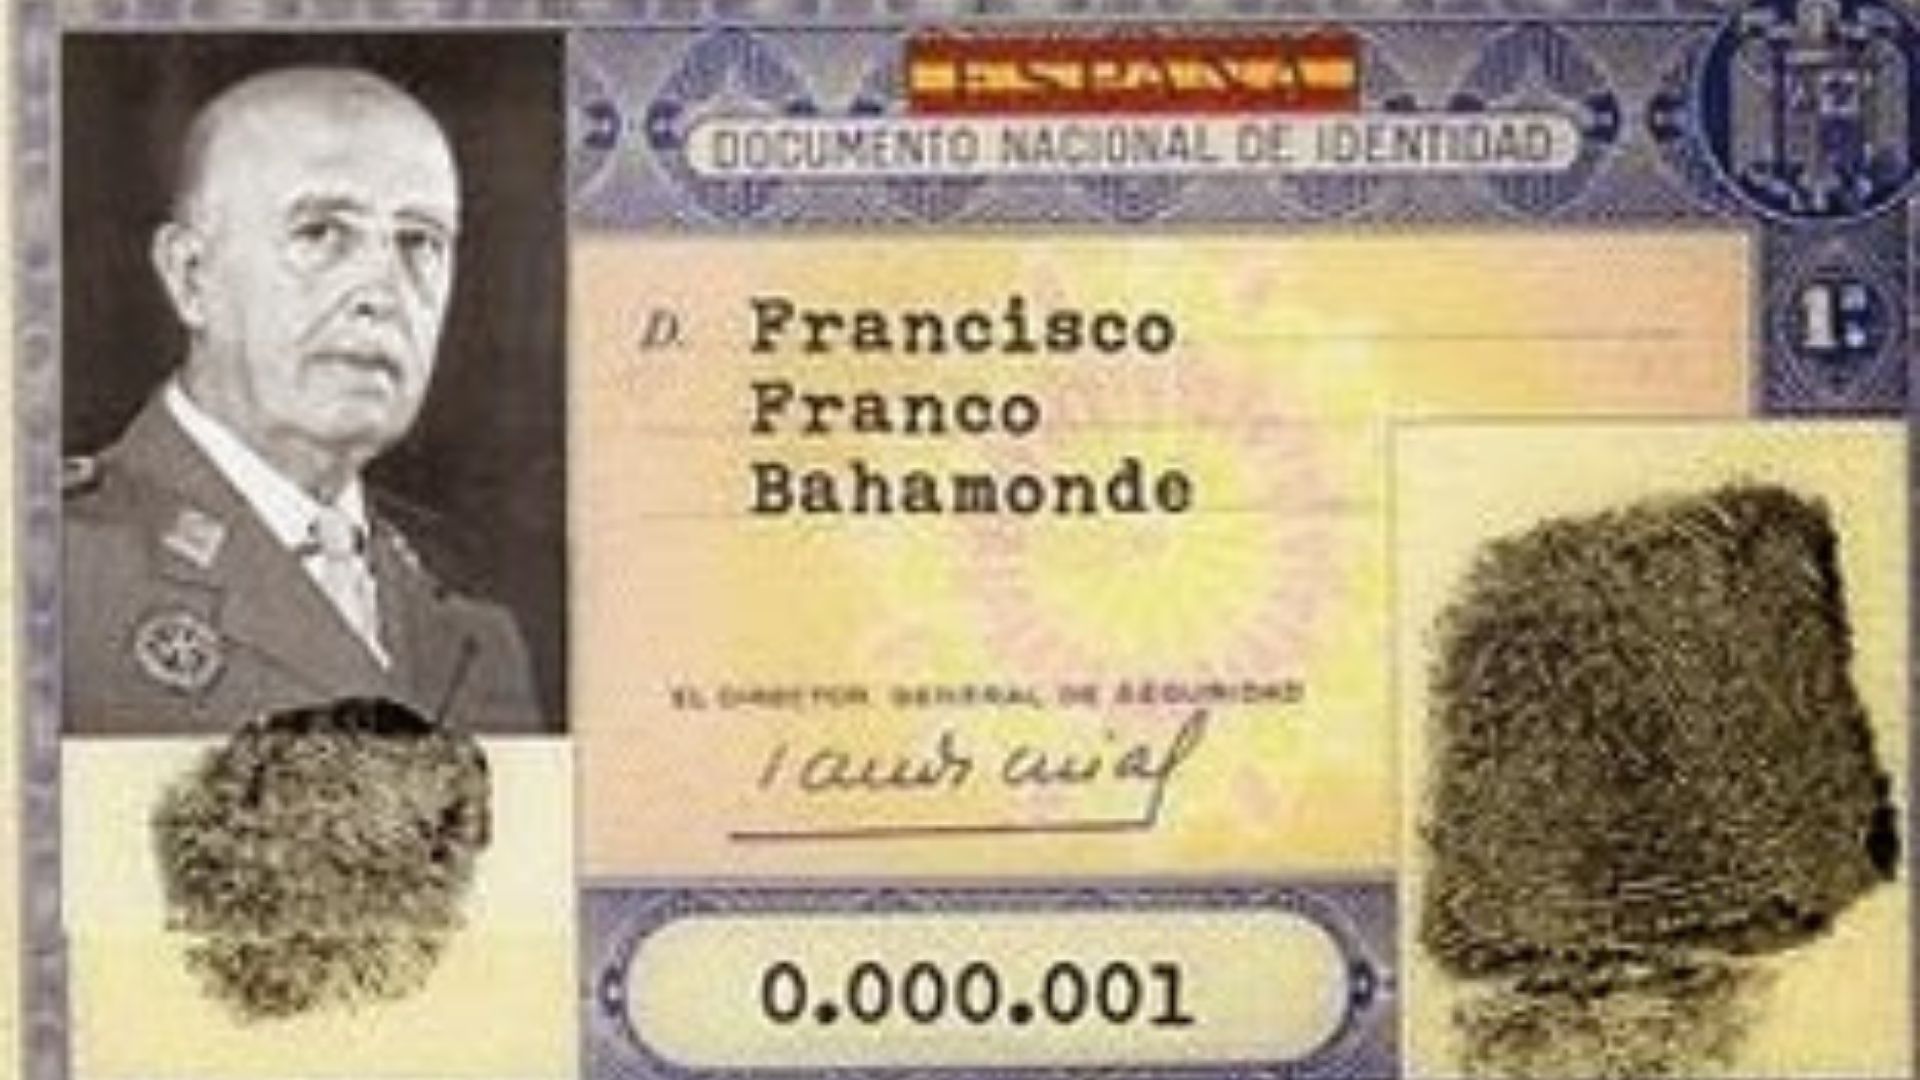 Documento de identidad de Francisco Franco